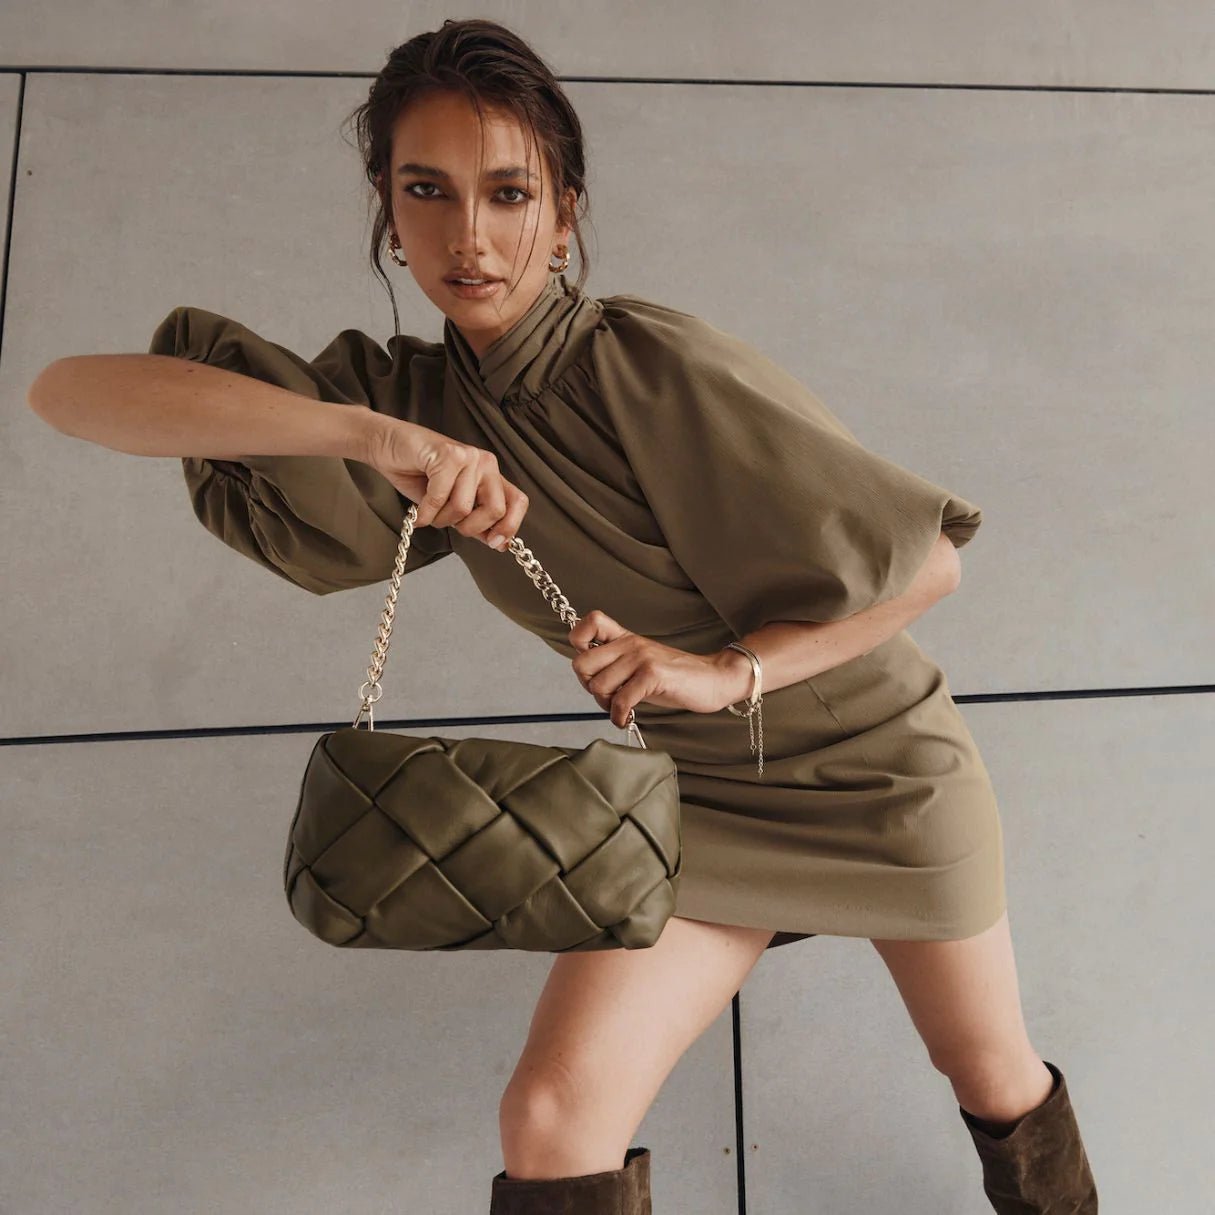 Shop PRE-ORDER Gabrielle Woven Leather Bag | Olive - Vestirsi